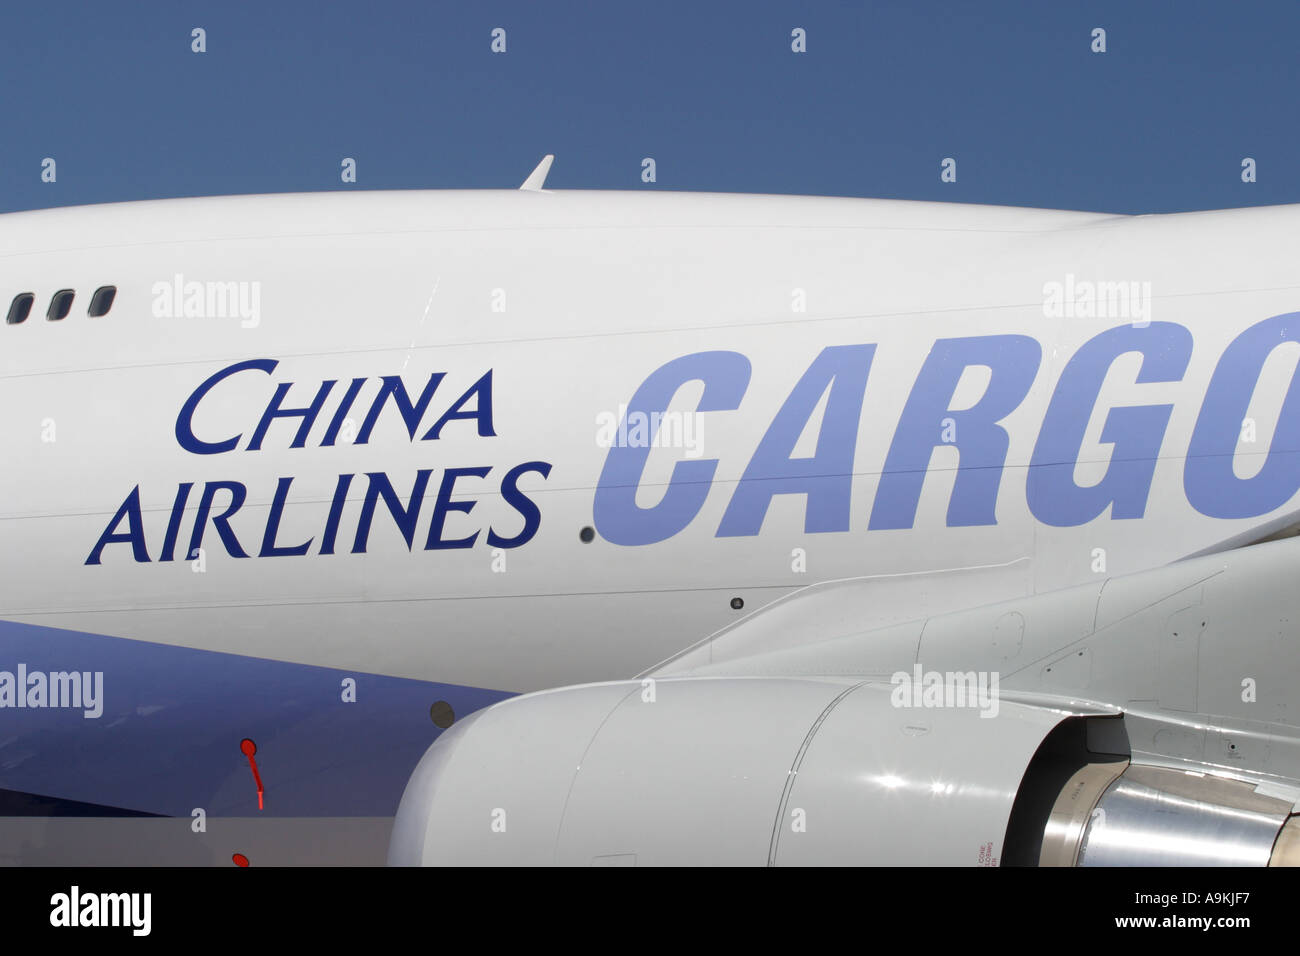 Avion de Boeing 747 cargo de la compagnie China Airlines Cargo Banque D'Images